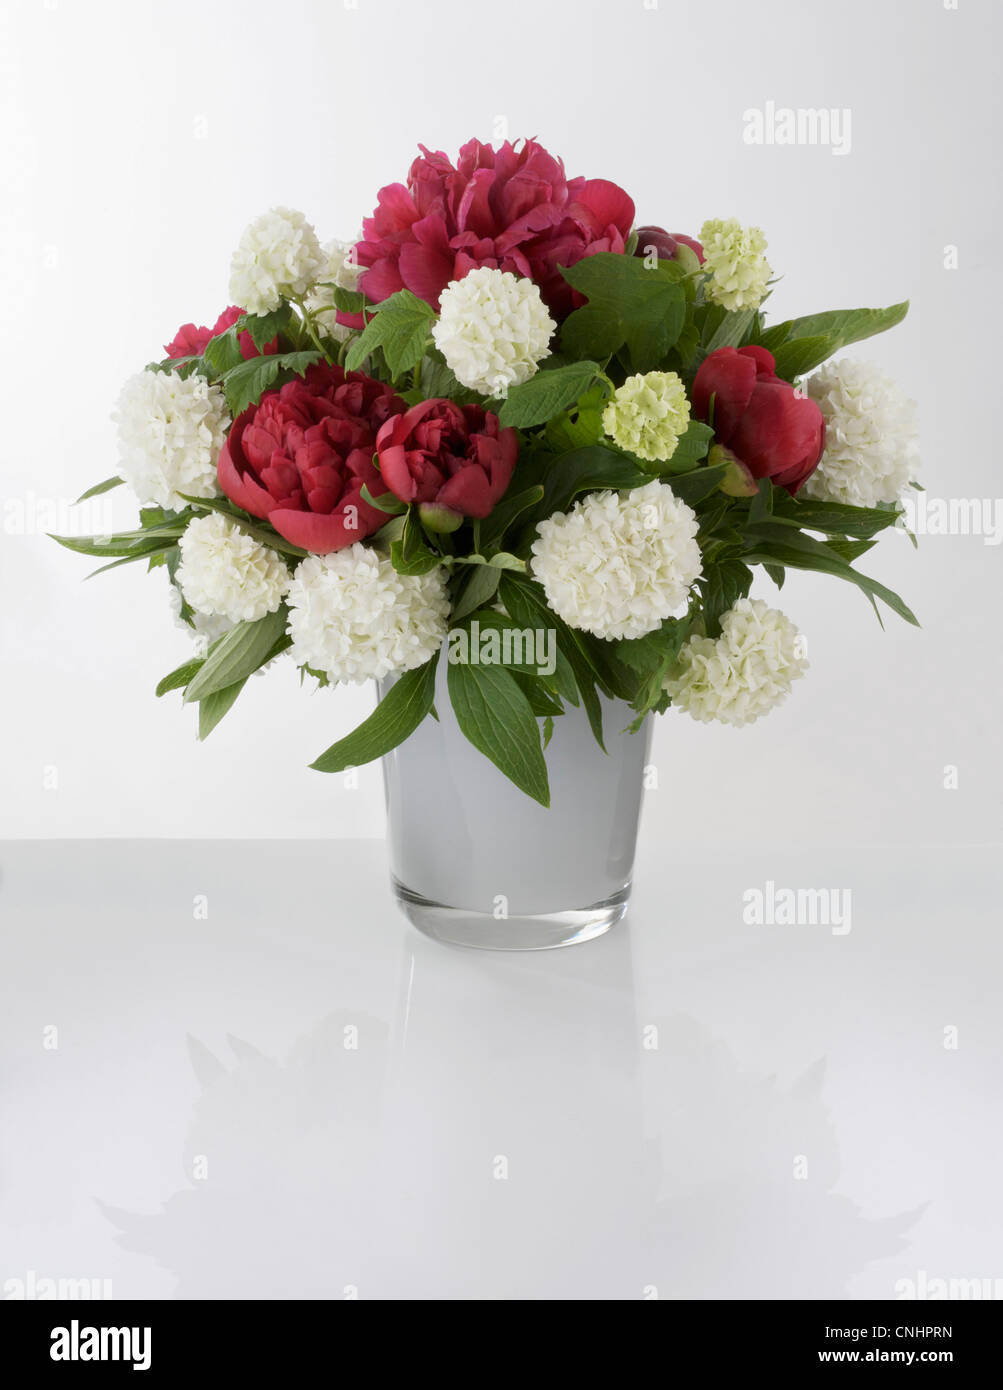 Un bouquet de fleurs rouges et blanches dans un vase Banque D'Images